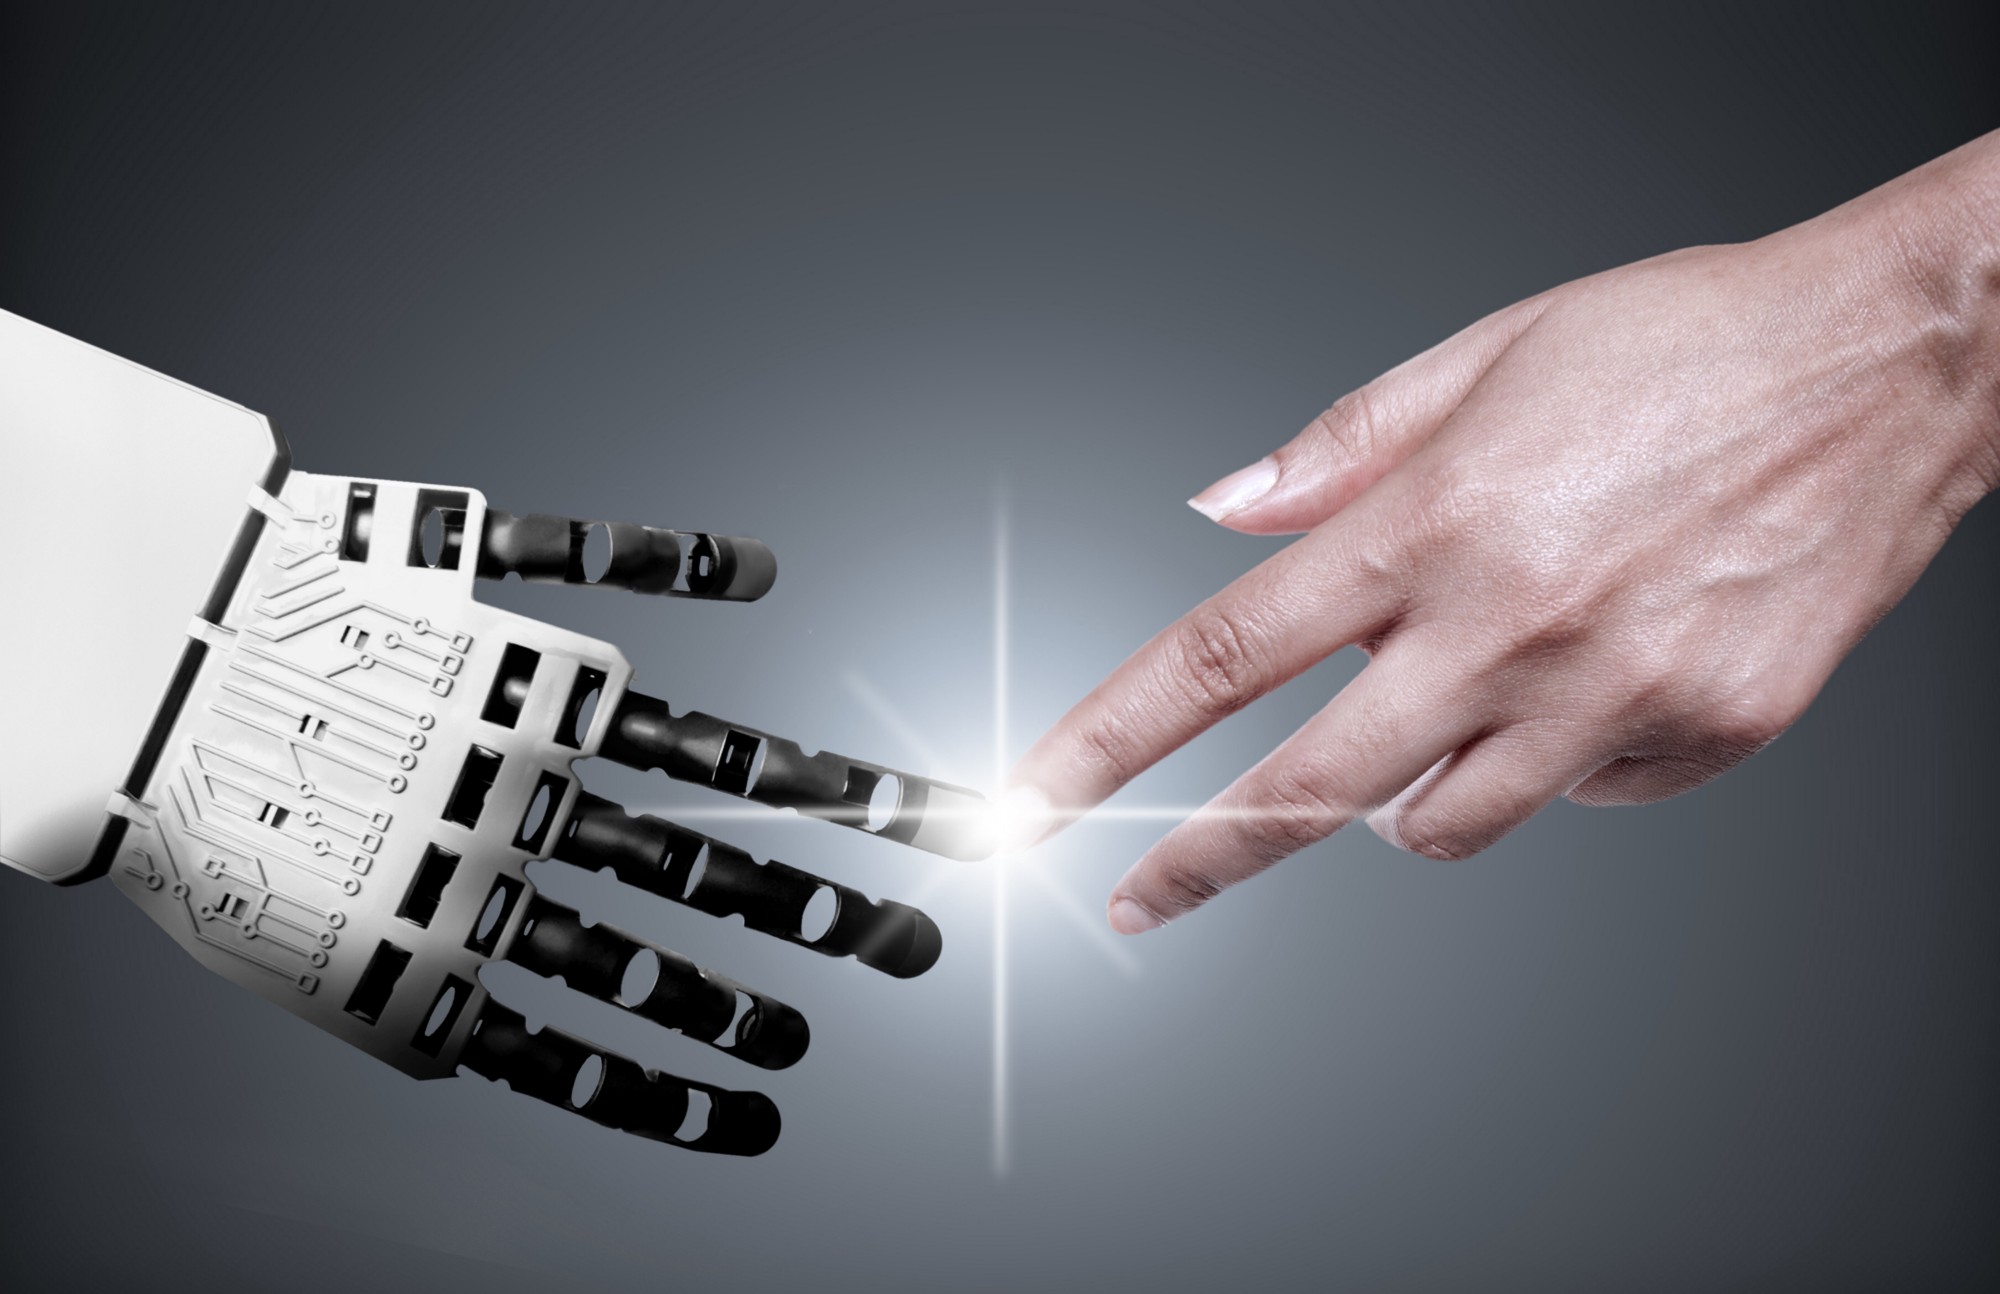 Bàn tay robot có tính tương tác linh hoạt cao được phát triển thành công